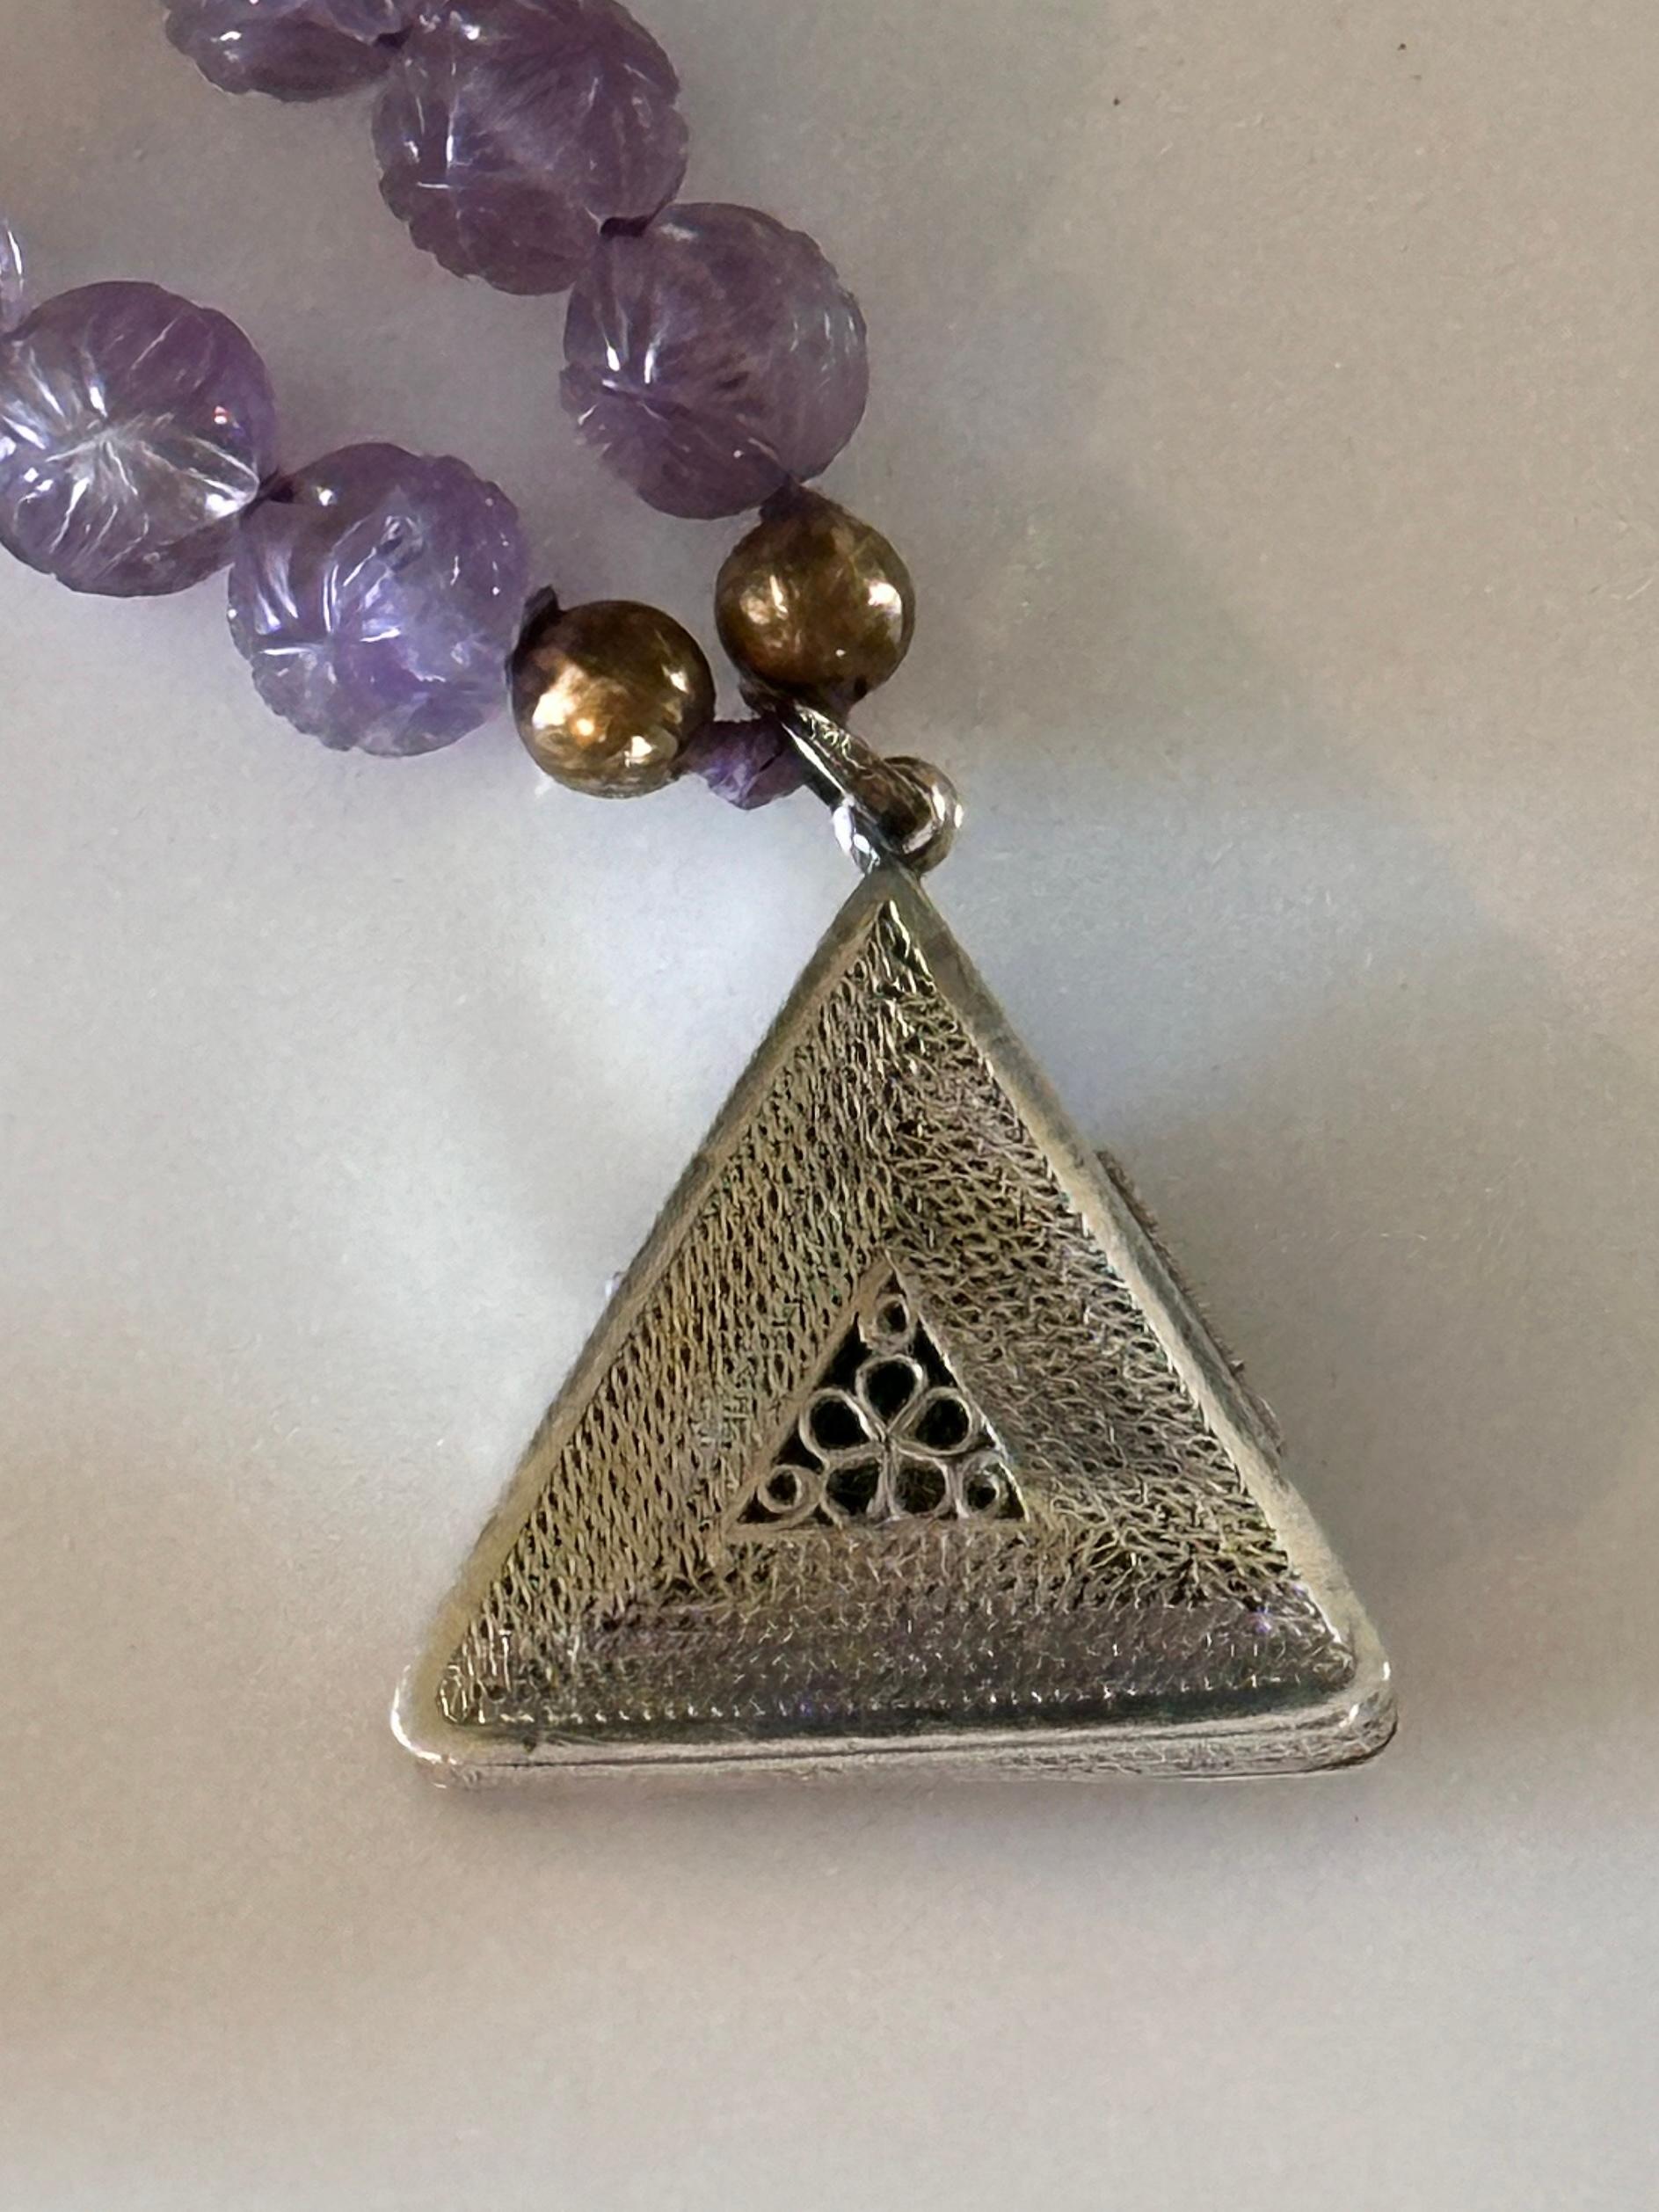 Women's Purple and Black Pendant Necklaces (2)